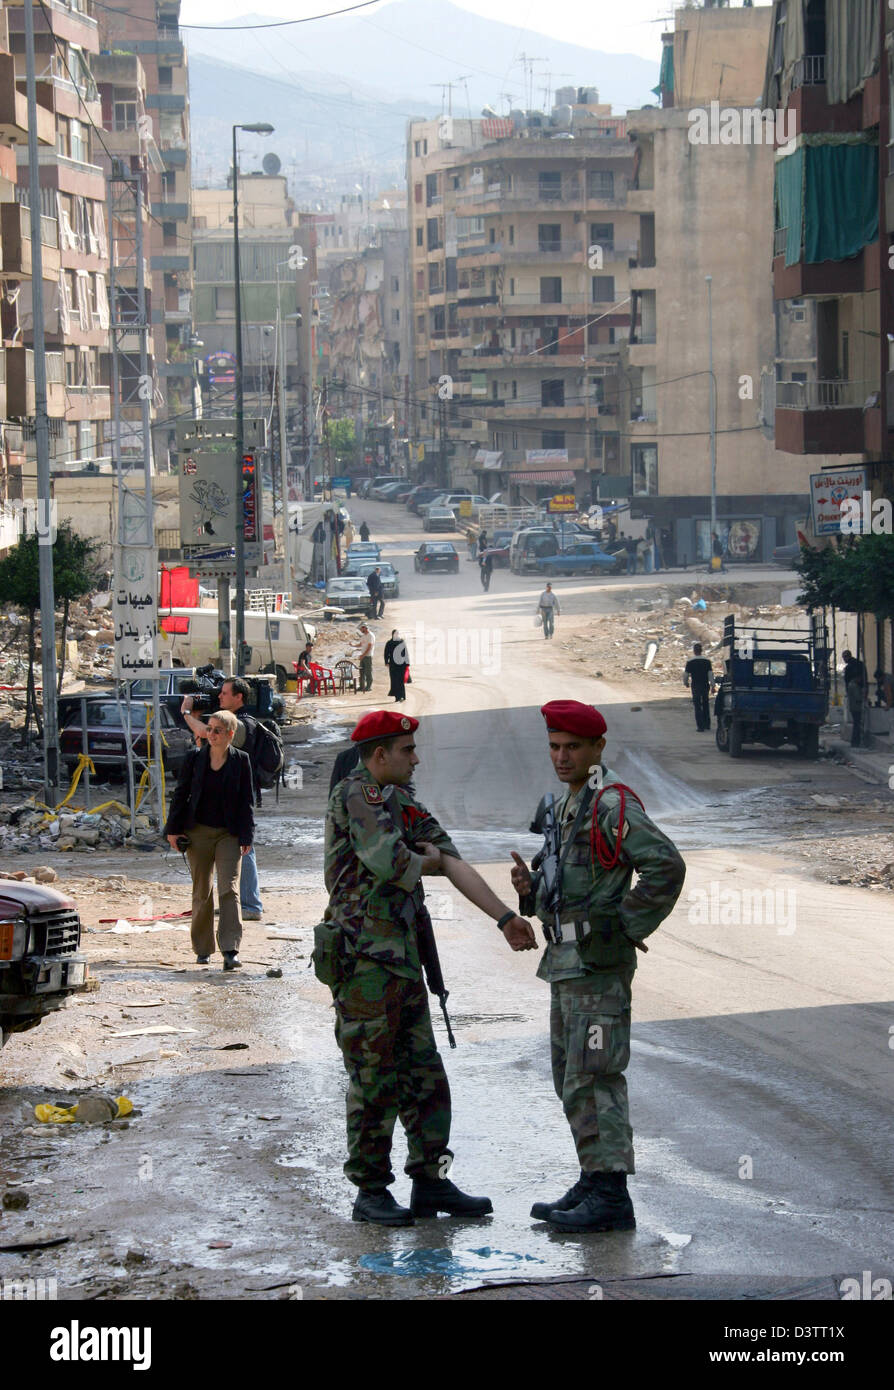 Zwei Soldaten stehen in einer Straße mit Appartement-Gebäuden und Geschäften in der Hauptstadt Beirut, Libanon, Freitag, 3. November 2006. Foto: Gero Breloer Stockfoto